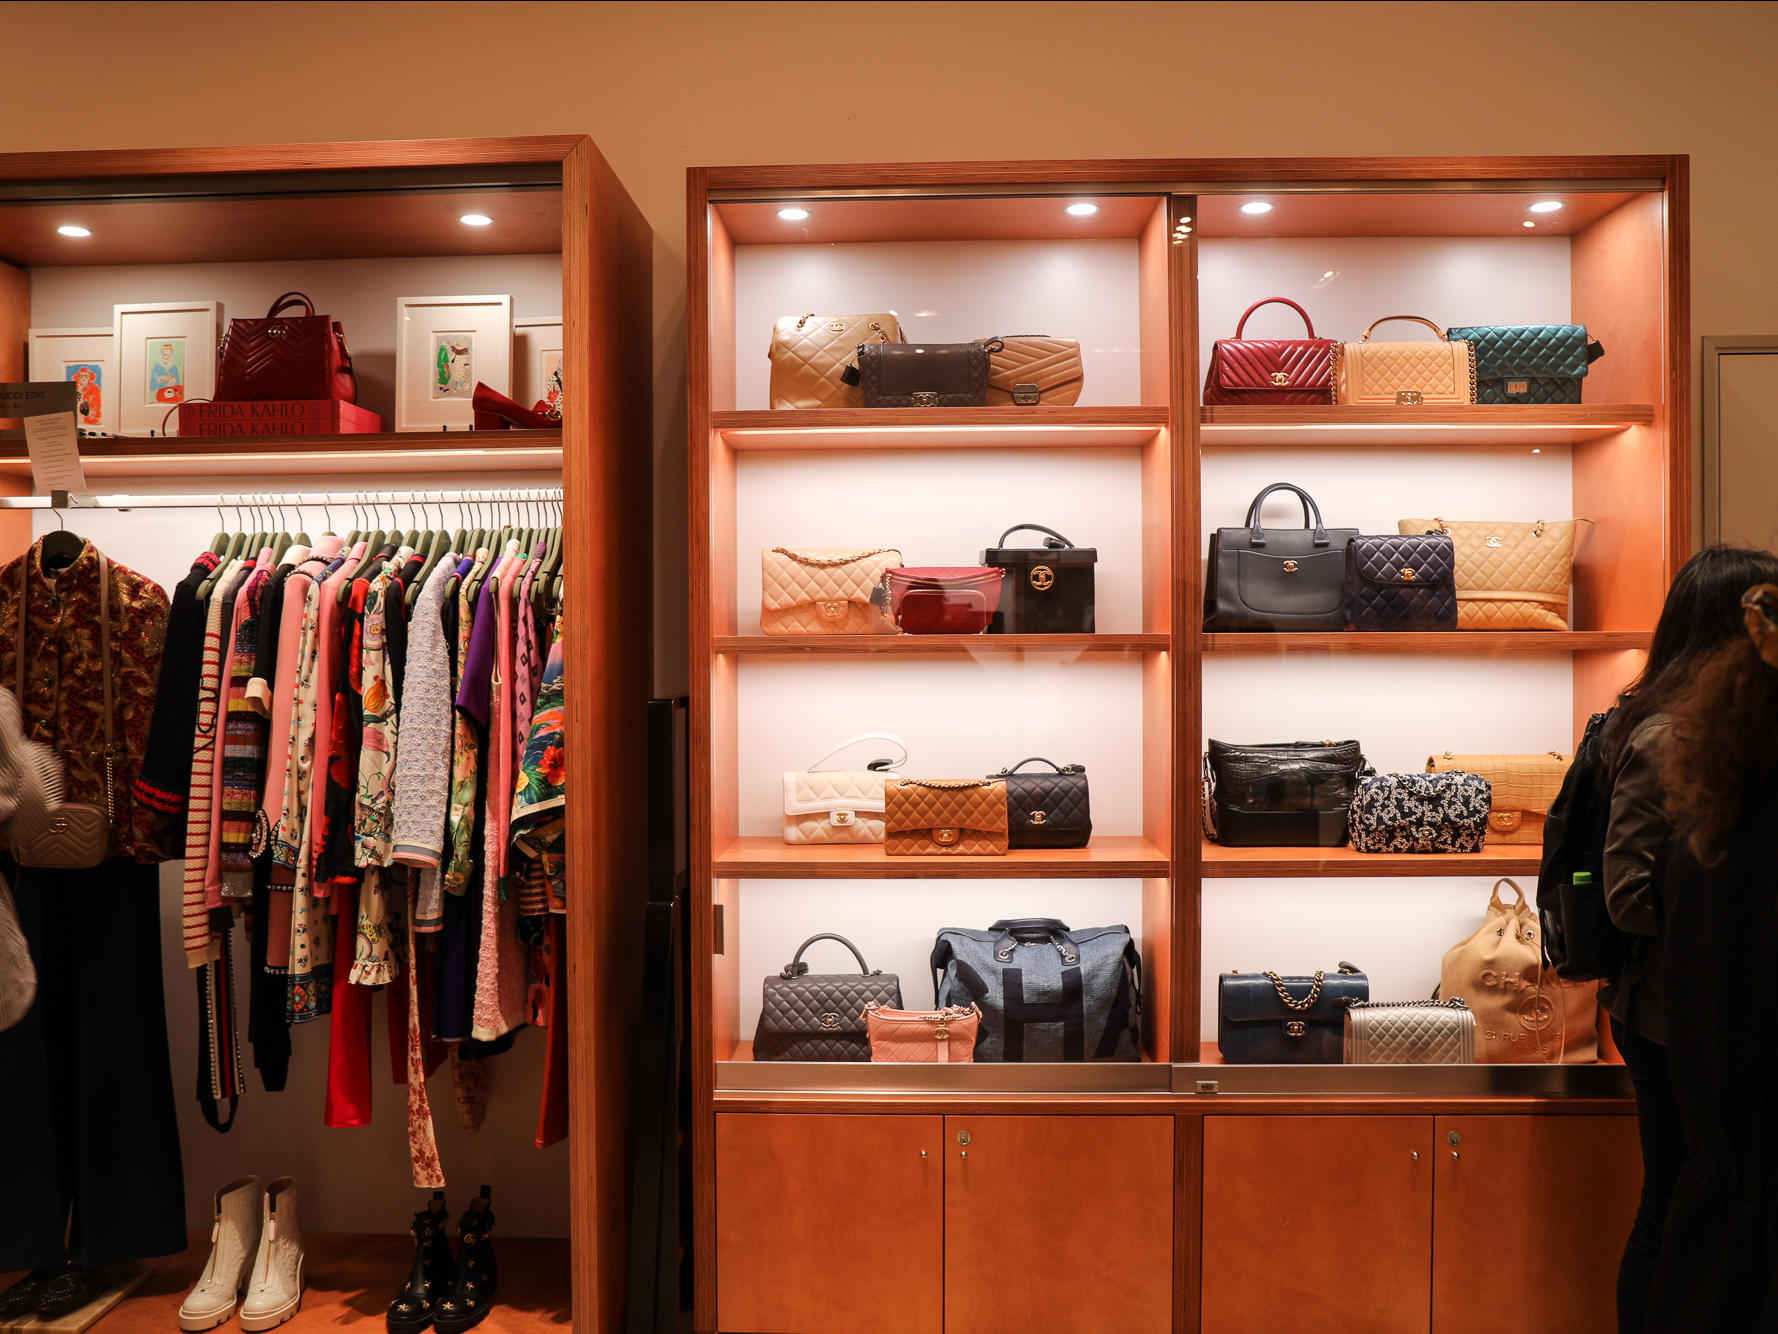 Louis Vuitton Store  Retail interior design, Store design interior, Luxury  closets design